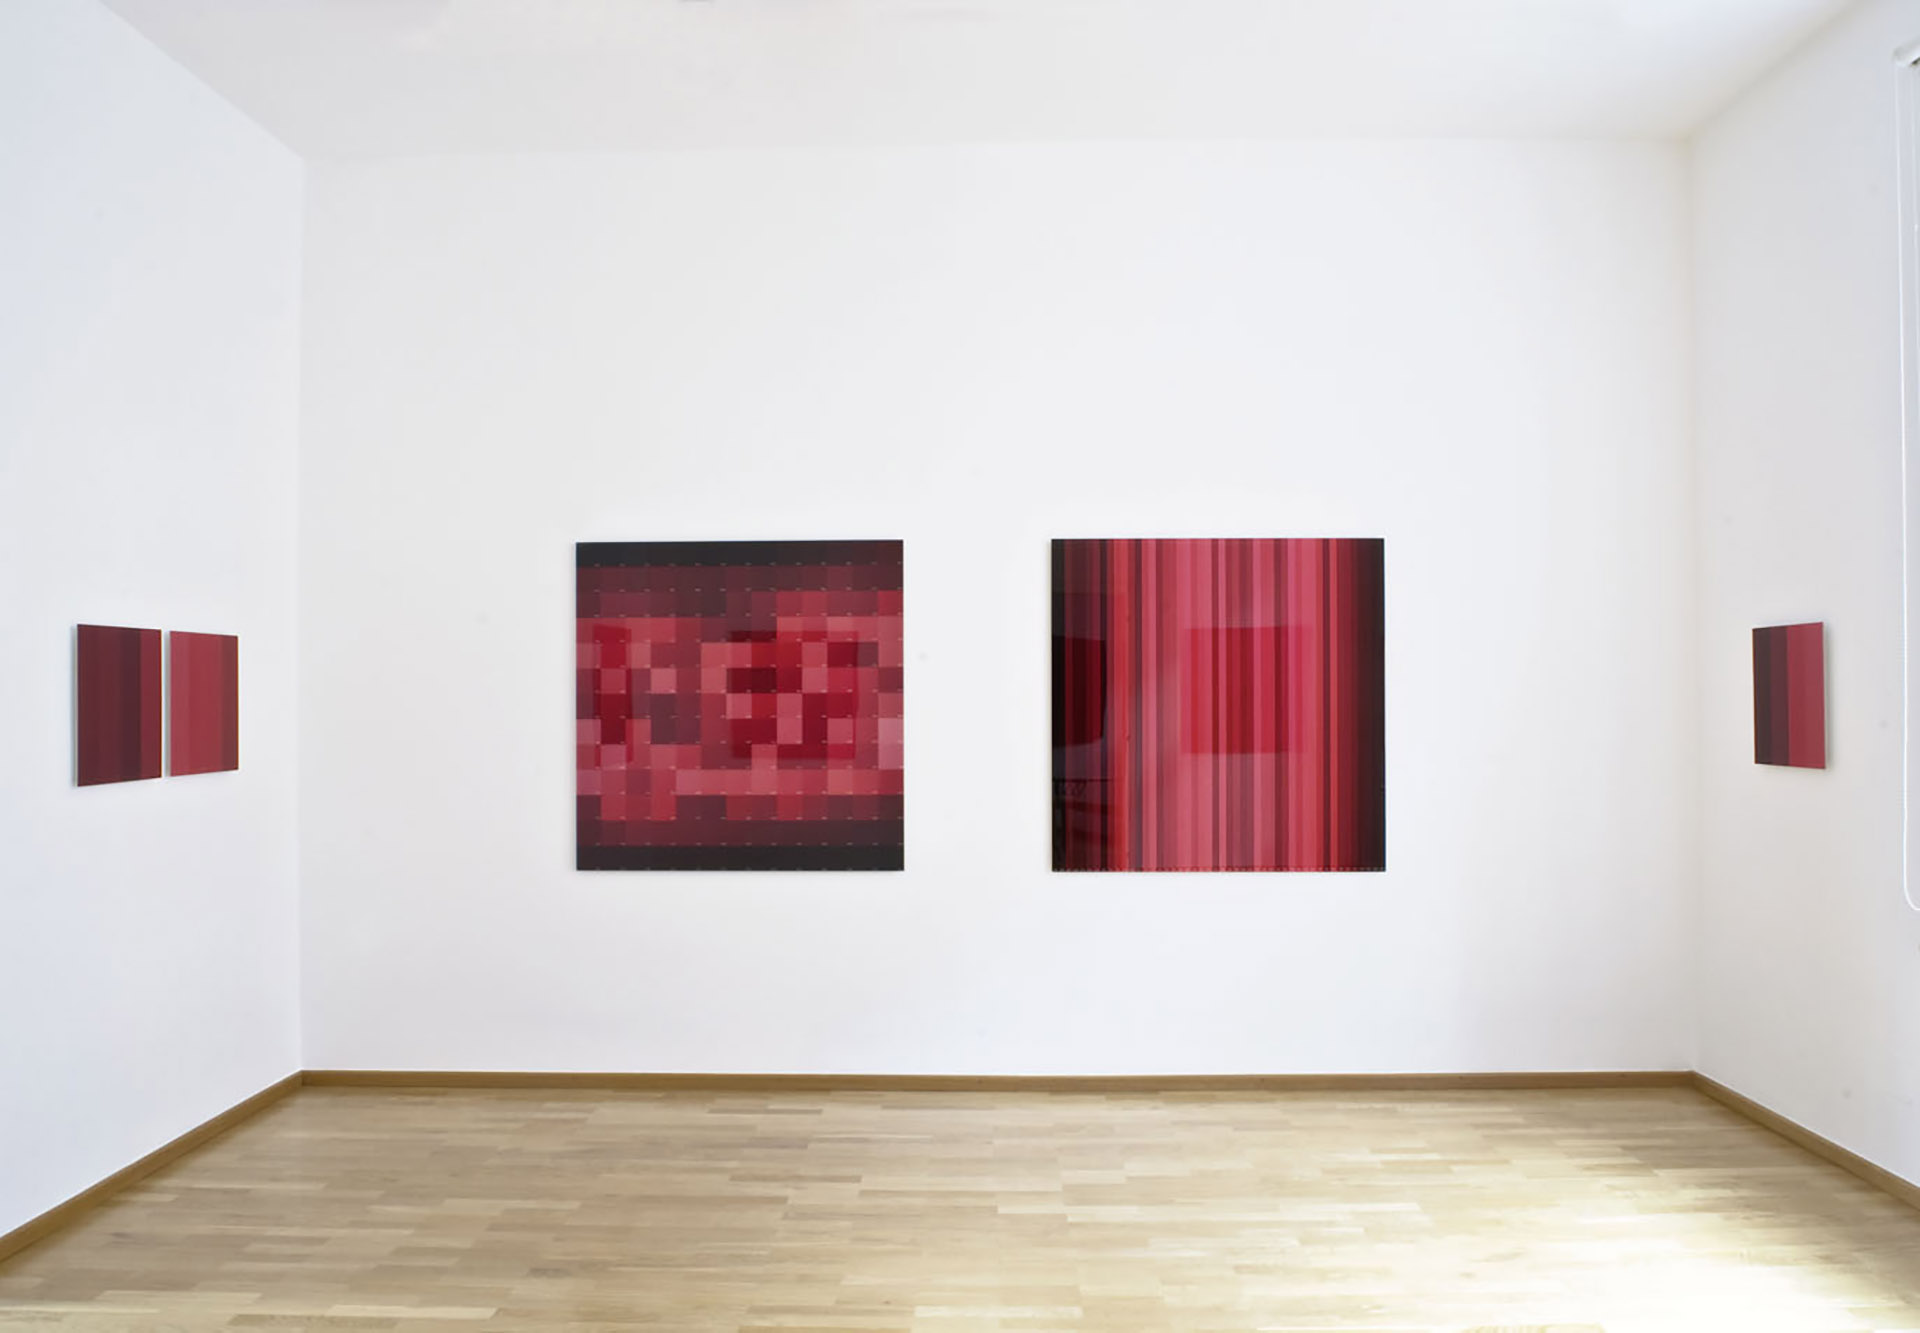 Ausstellungsansicht "Lichtzeiten - Zinnober", Inge Dick zum 70. Geburtstag, Galerie Renate Bender 2011